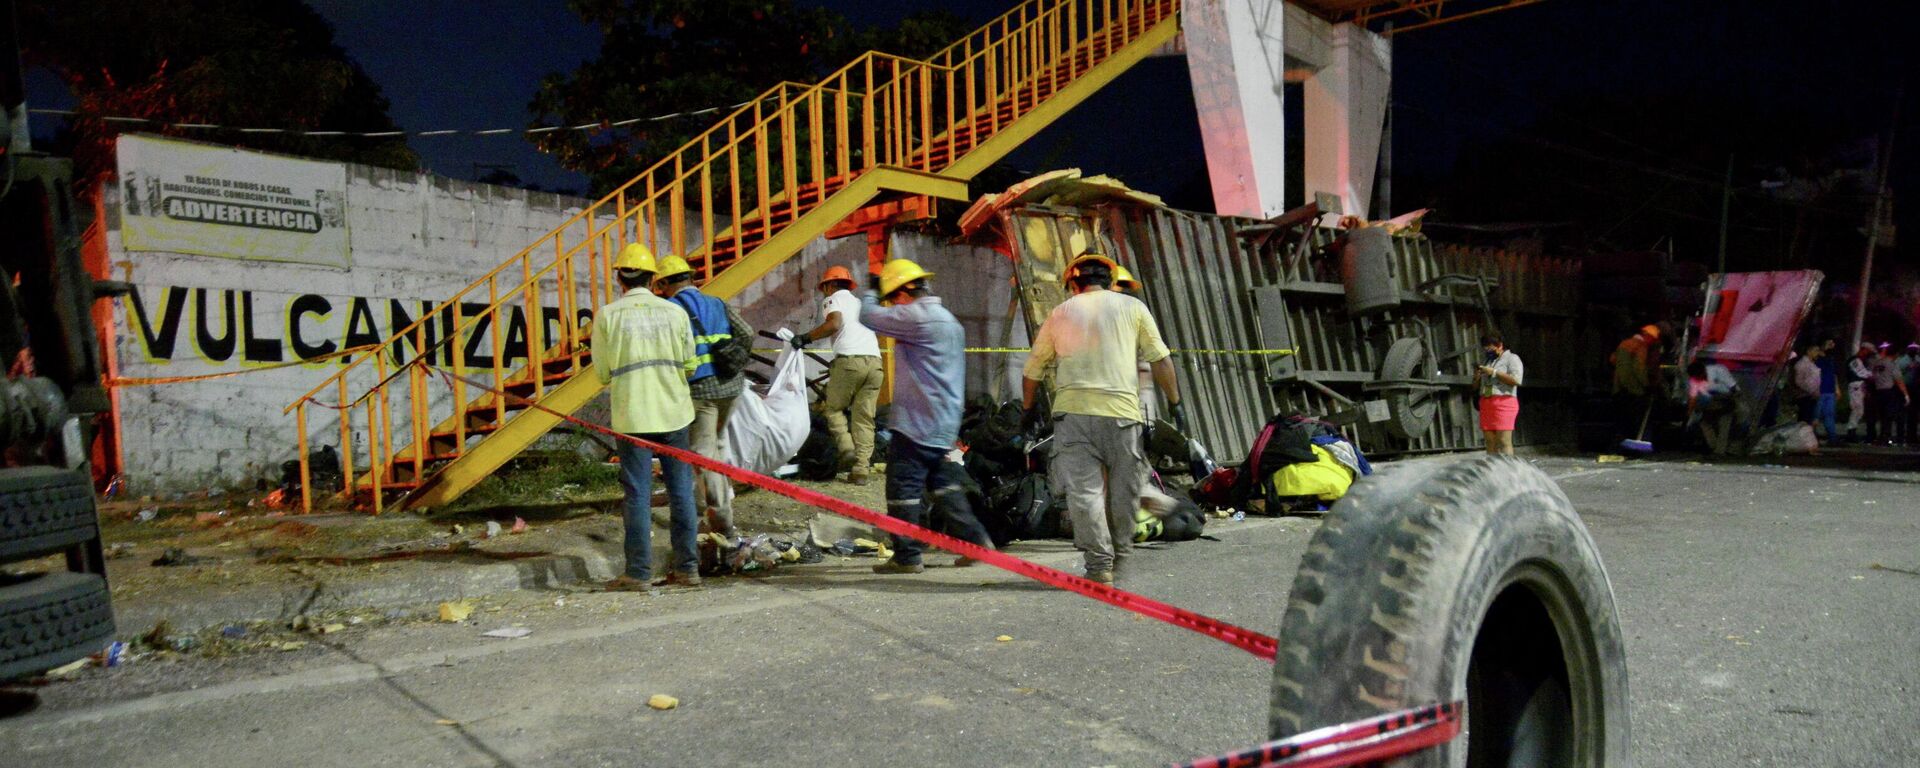 Miembros de Protección Civil trabajan en el lugar de un accidente de tráfico que dejó más de 50 personas muertas, en la ciudad de Tuxtla Gutiérrez, el estado de Chiapas, México, 9 de diciembre de 2021 - Sputnik Mundo, 1920, 10.12.2021